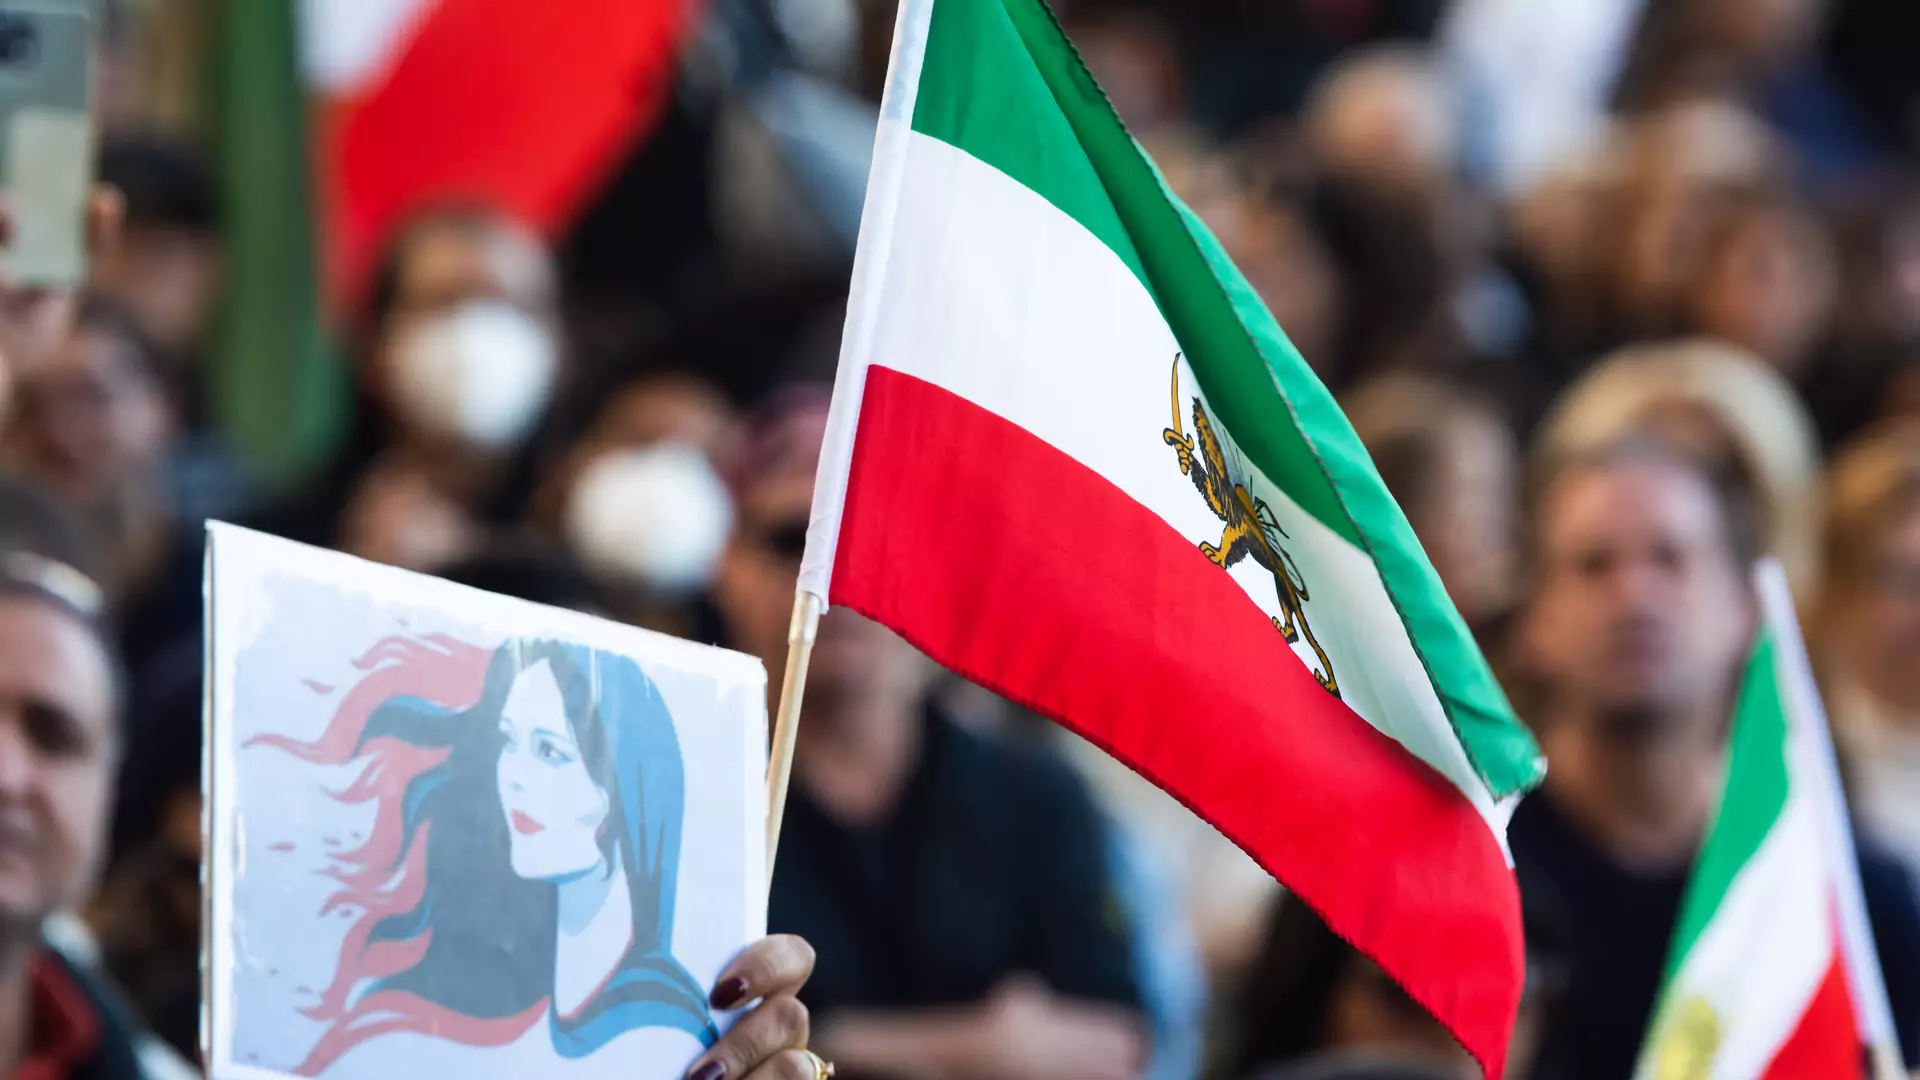 Protesty w Iranie. Konserwatywny polityk wzywa do przemyślenia obowiązku noszenia hidżabu